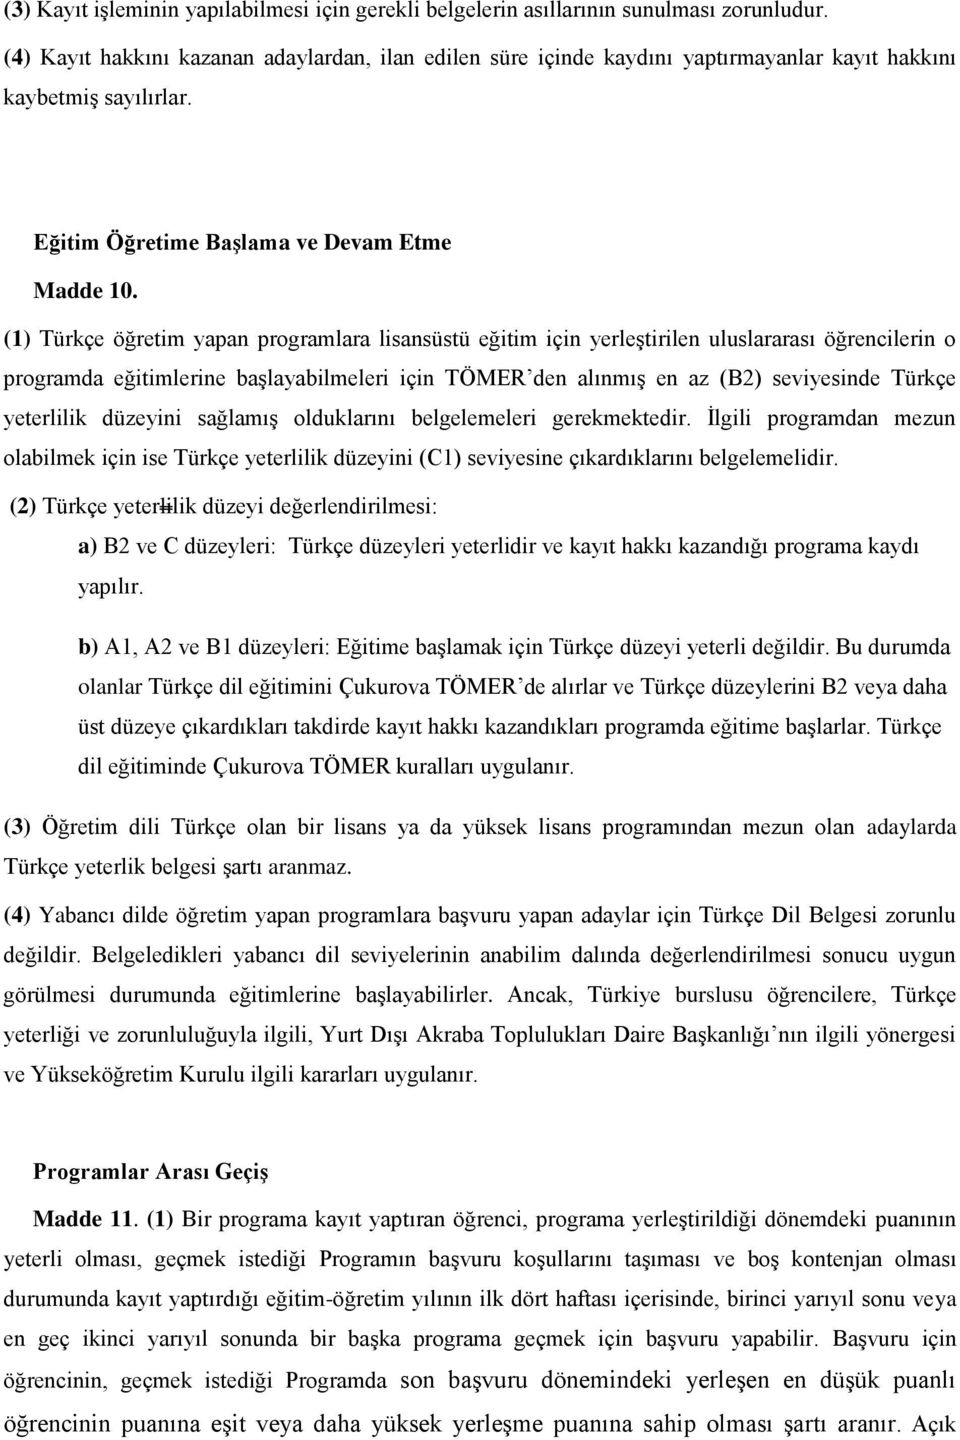 (1) Türkçe öğretim yapan programlara lisansüstü eğitim için yerleştirilen uluslararası öğrencilerin o programda eğitimlerine başlayabilmeleri için TÖMER den alınmış en az (B2) seviyesinde Türkçe